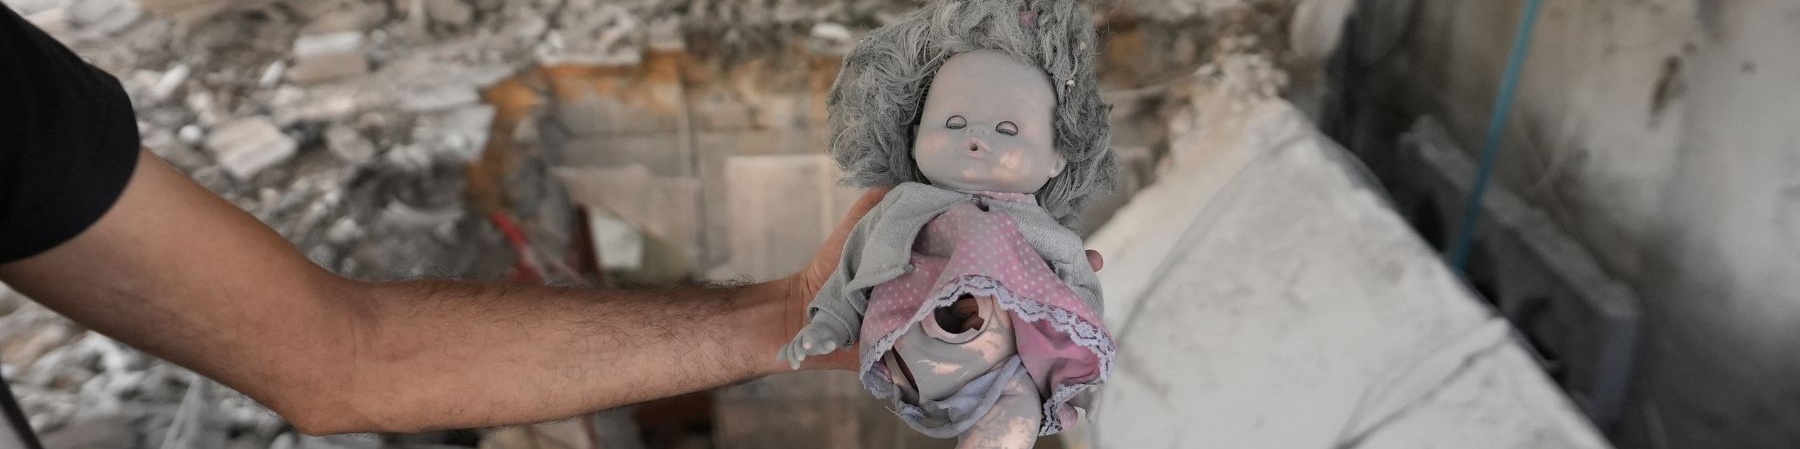 peluche di una bambola sopra le macerie a Gaza senza un arto